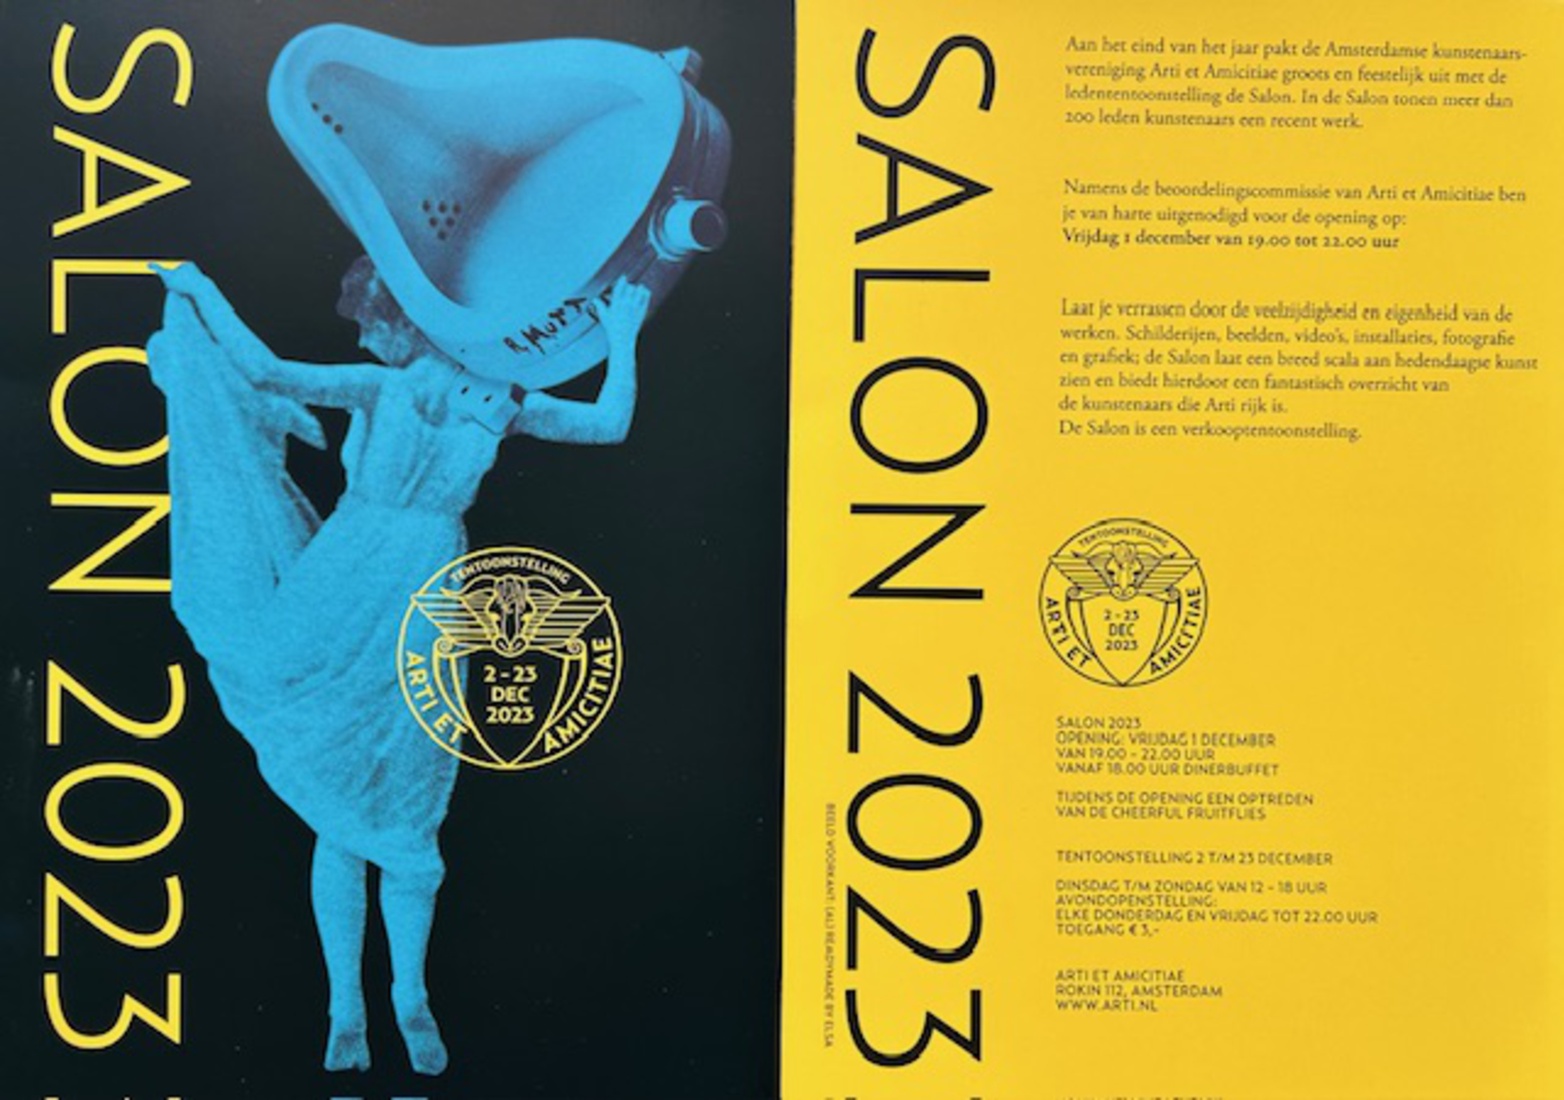 Arti et Amicitiae Salon 2023 Flyer